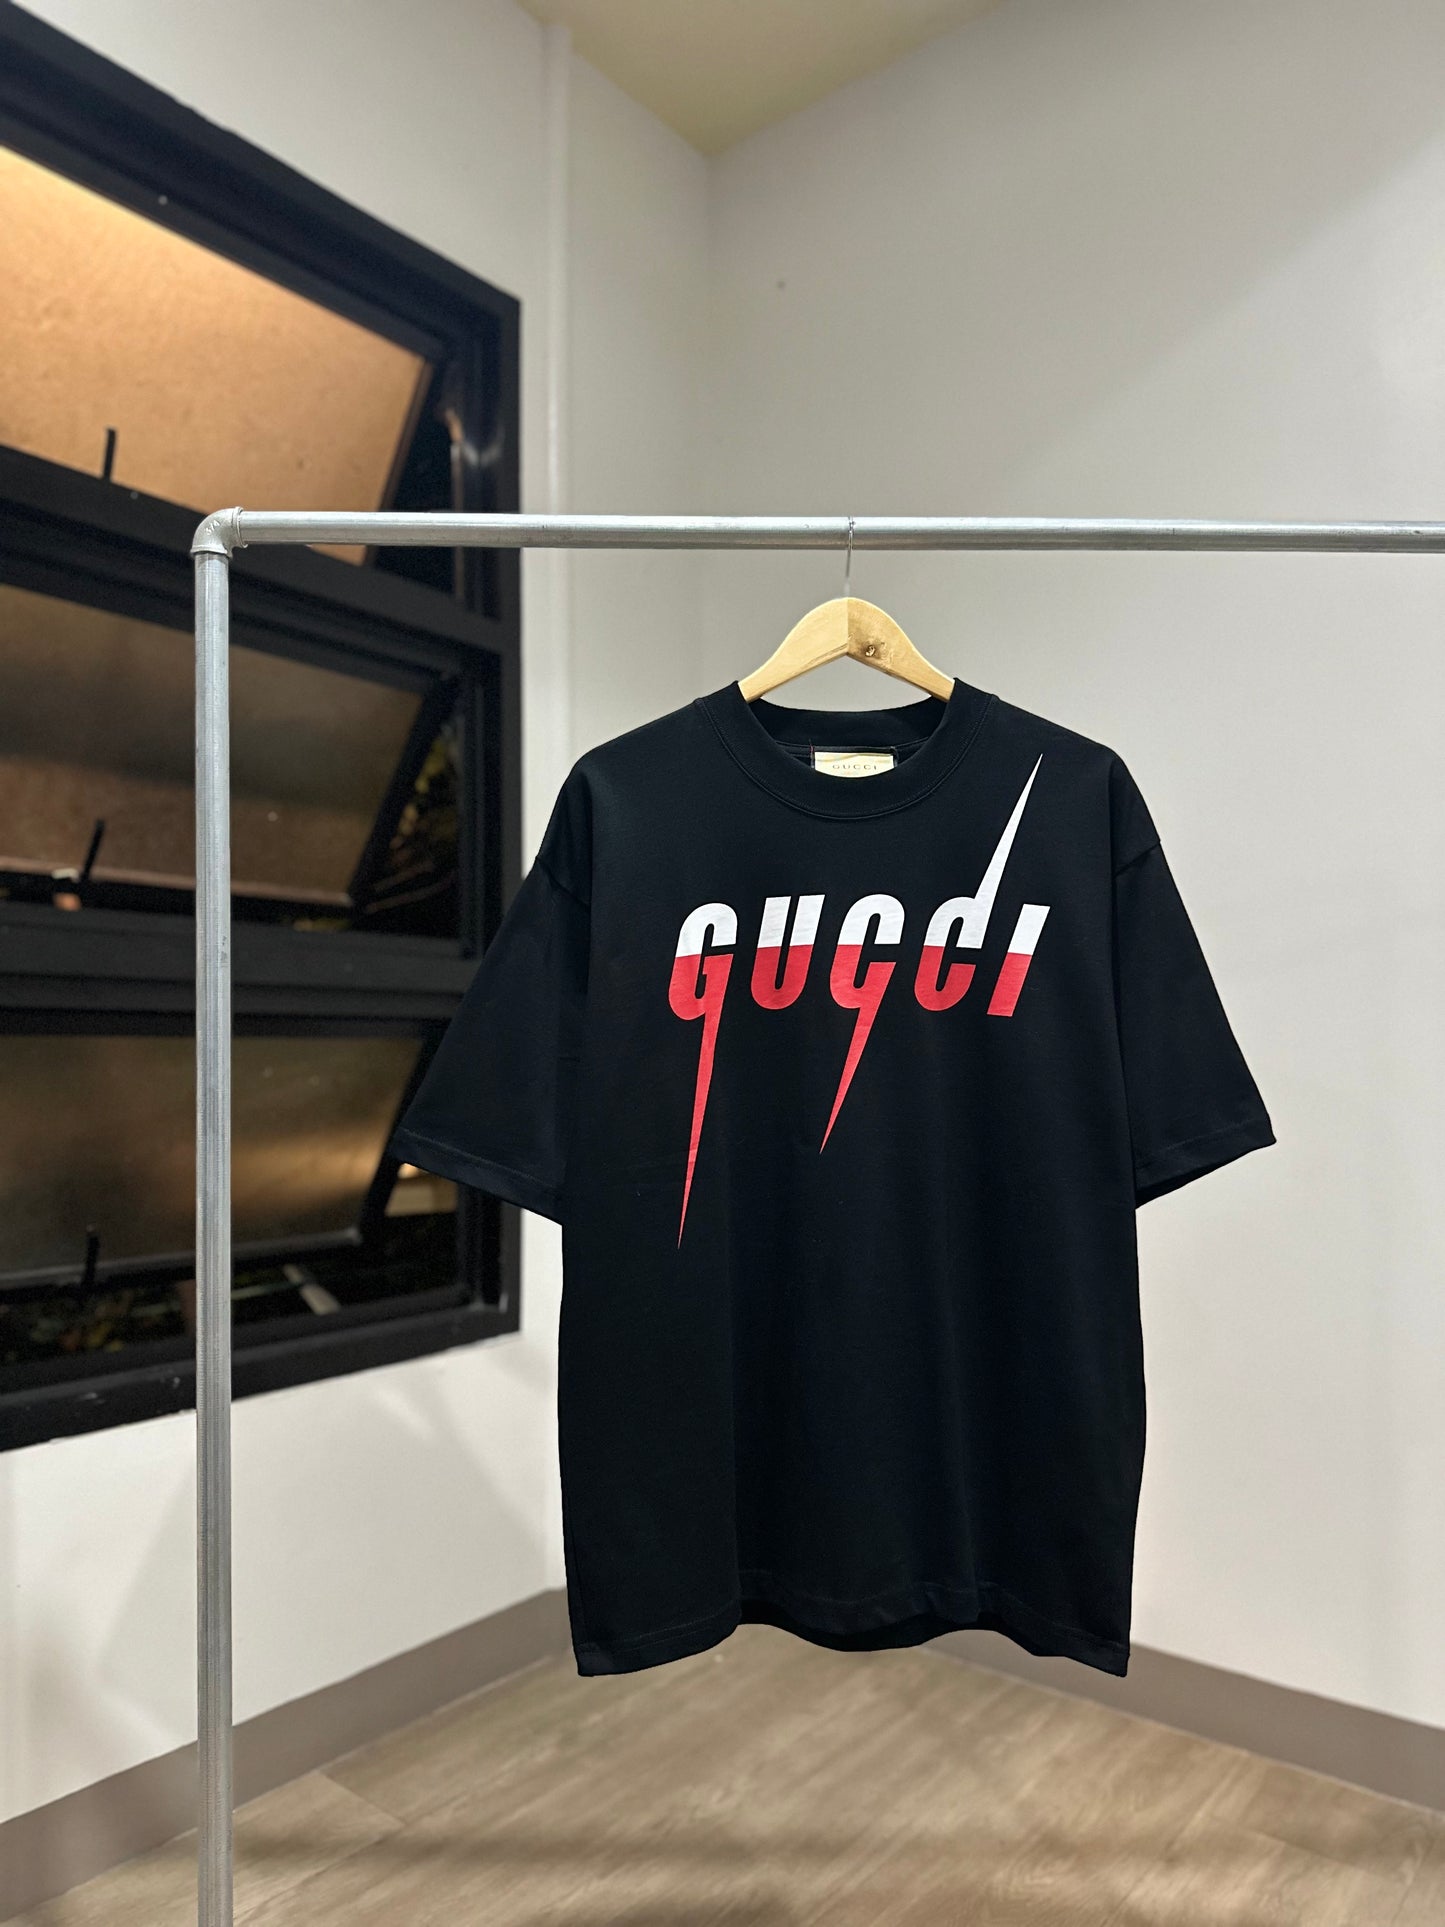 Gucci Blade T-Shirt (Black)